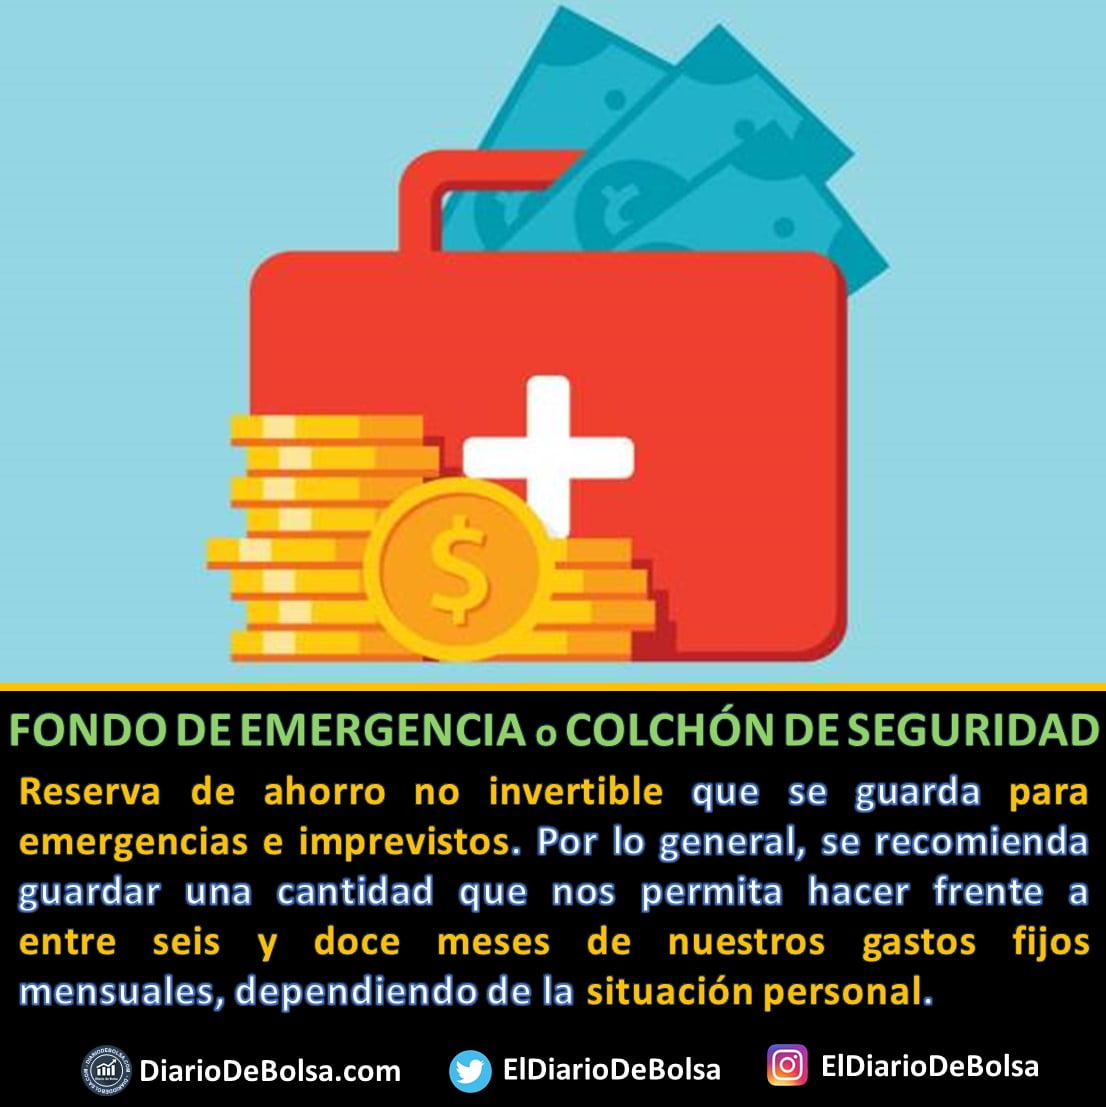 No autorizado misericordia Reanimar Qué es el Fondo de emergencia o colchón de seguridad - Diario de Bolsa